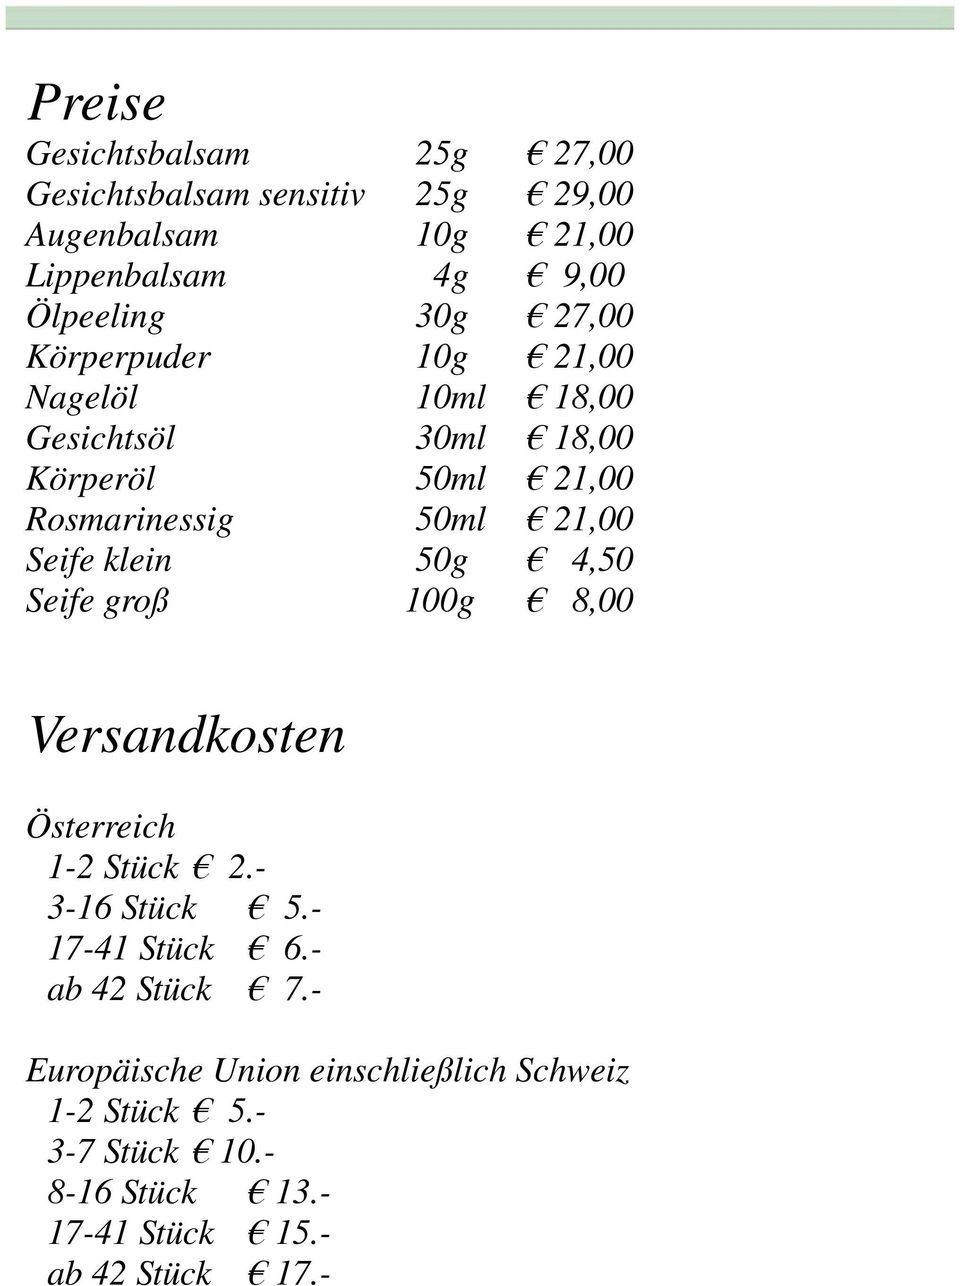 Seife klein 50g 4,50 Seife groß 100g 8,00 Versandkosten Österreich 1-2 Stück 2.- 3-16 Stück 5.- 17-41 Stück 6.